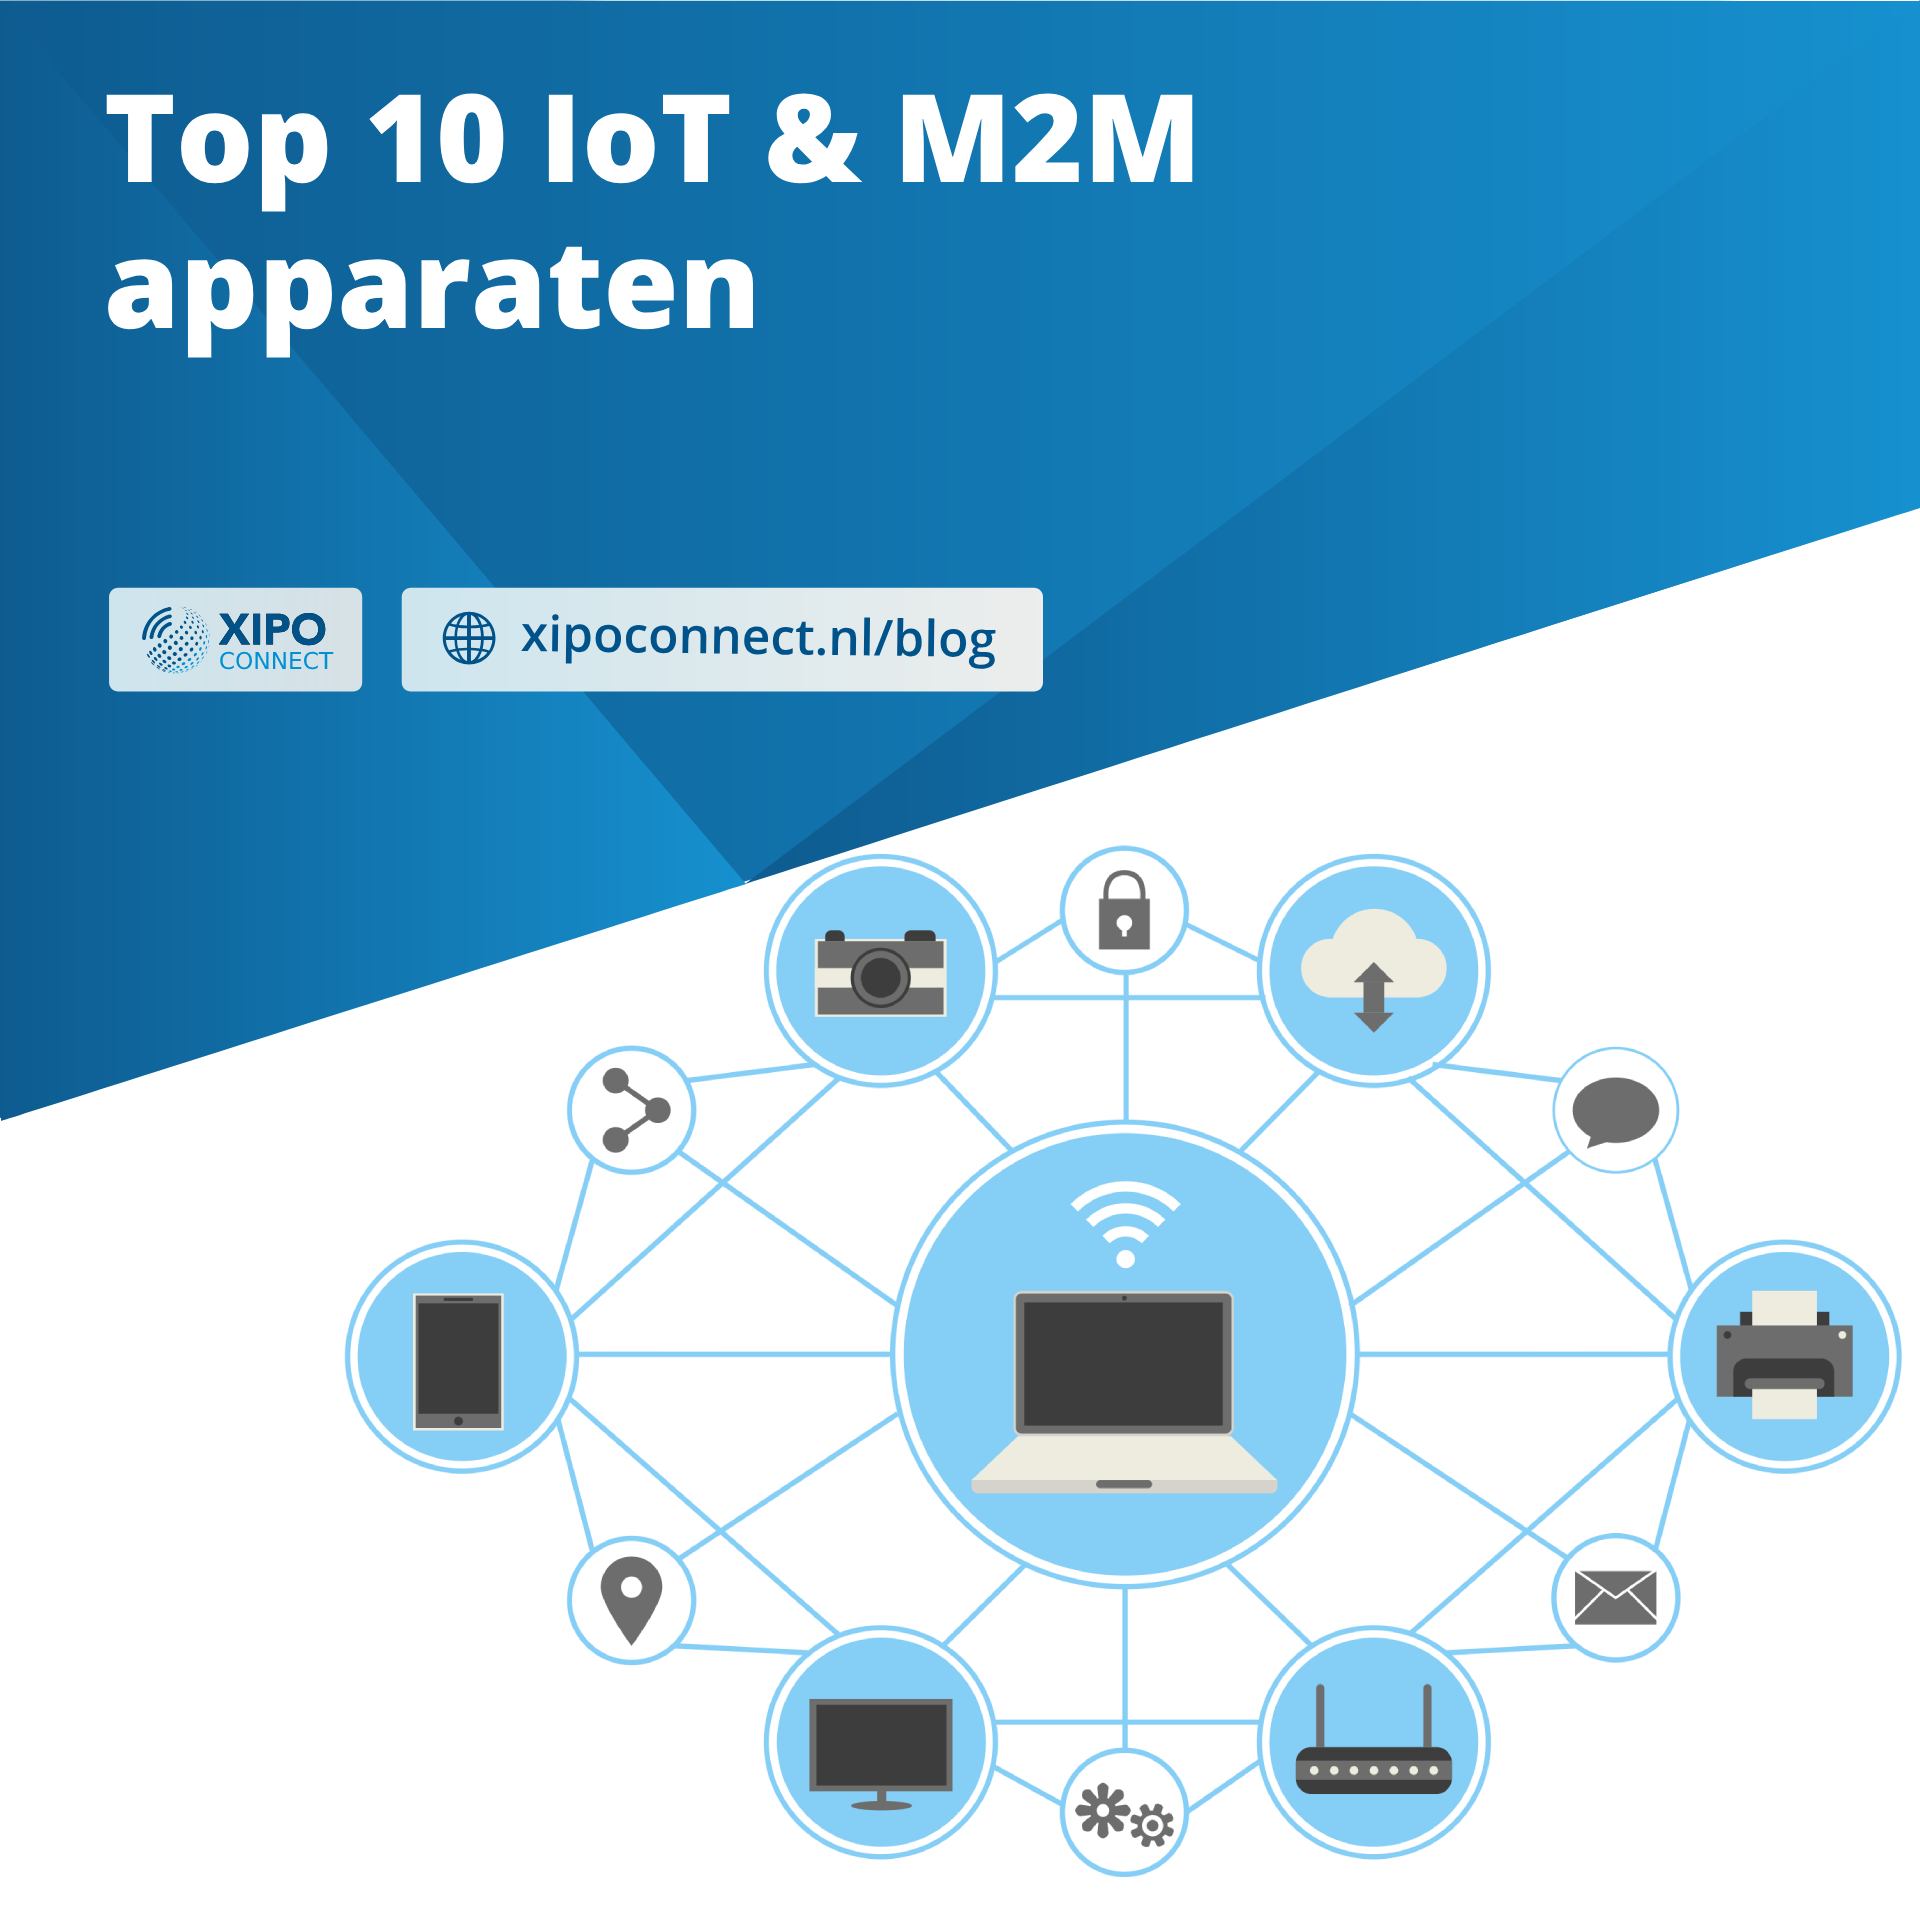 Top 10 IoT & M2M apparaten